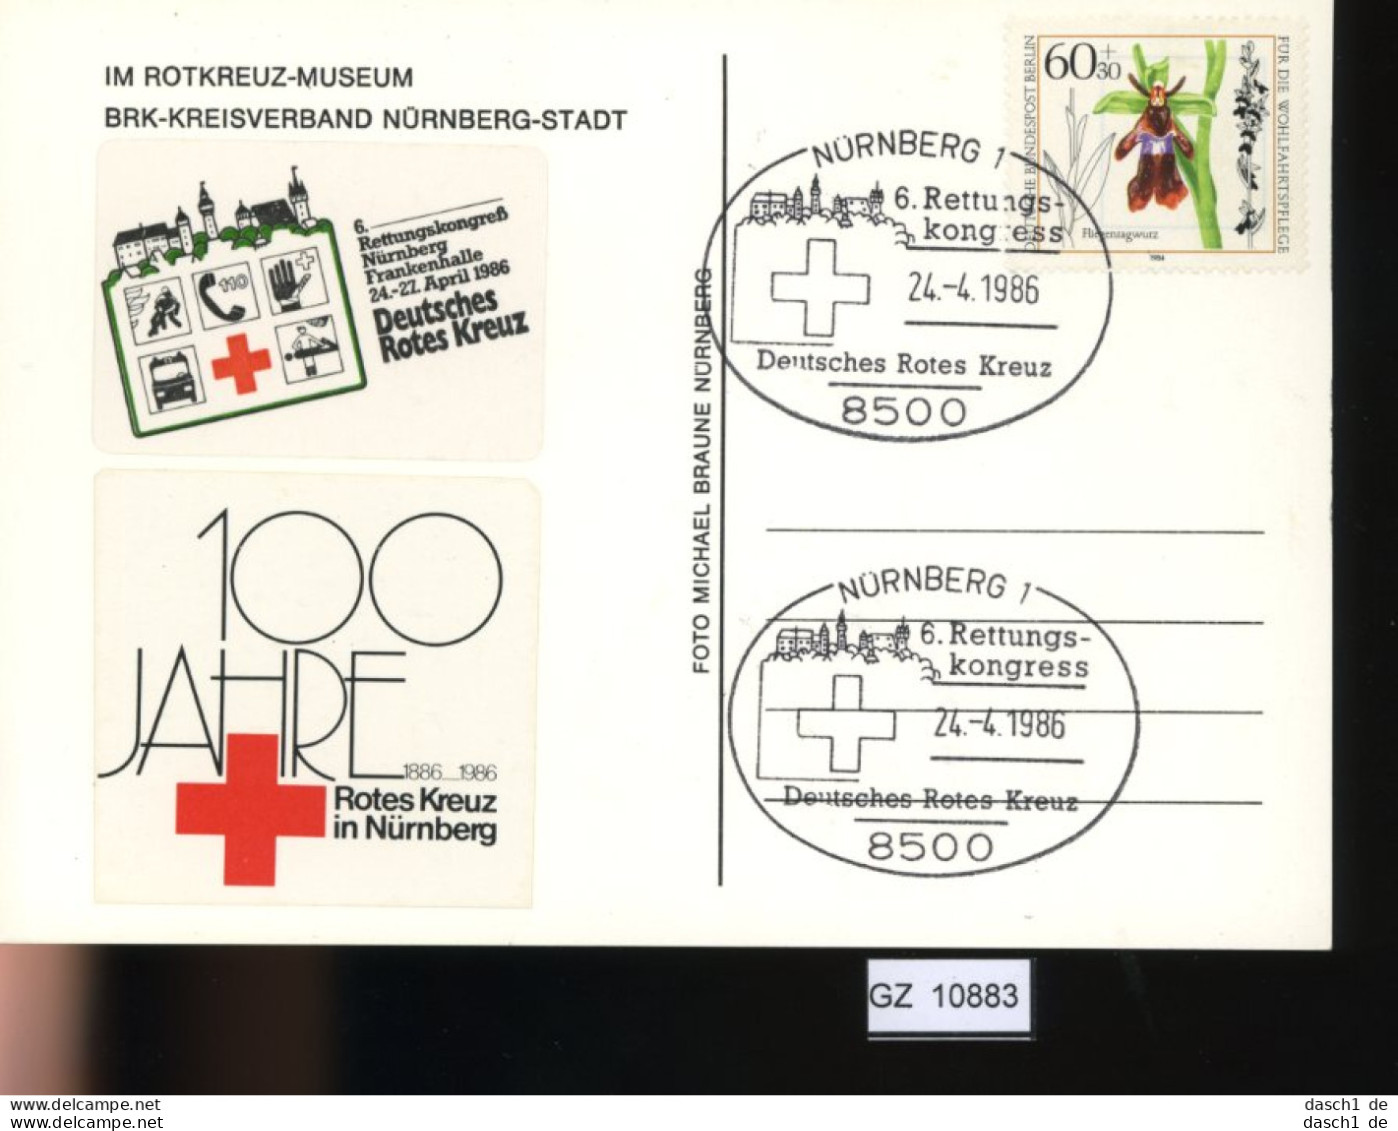 Motiv, 8 Lose u.a. Rotes Kreuz, Jugendzentrum Dahomey, 1975